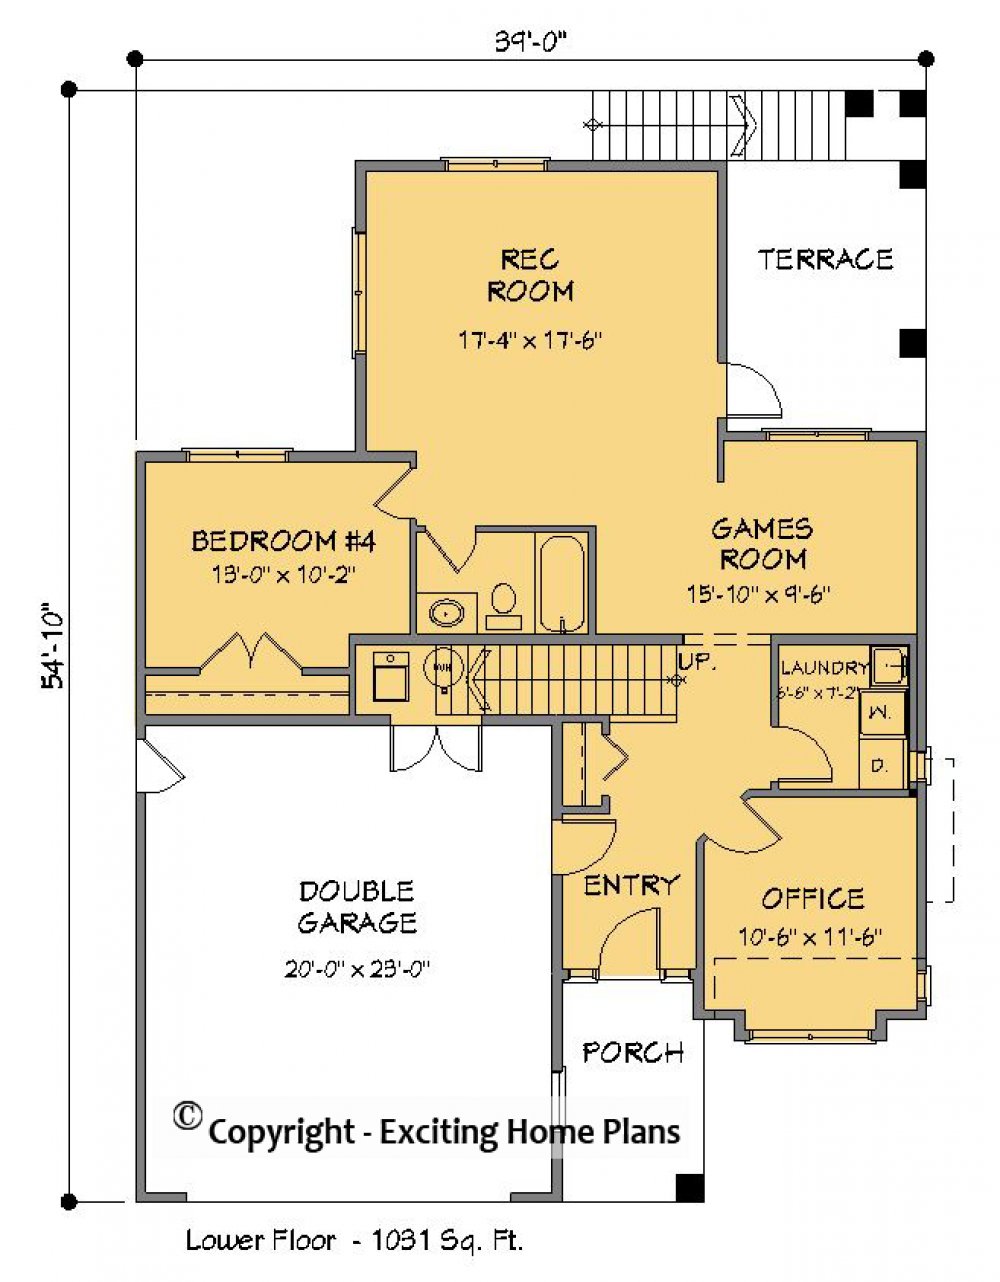 House Plan E1430-10 Lower Floor Plan